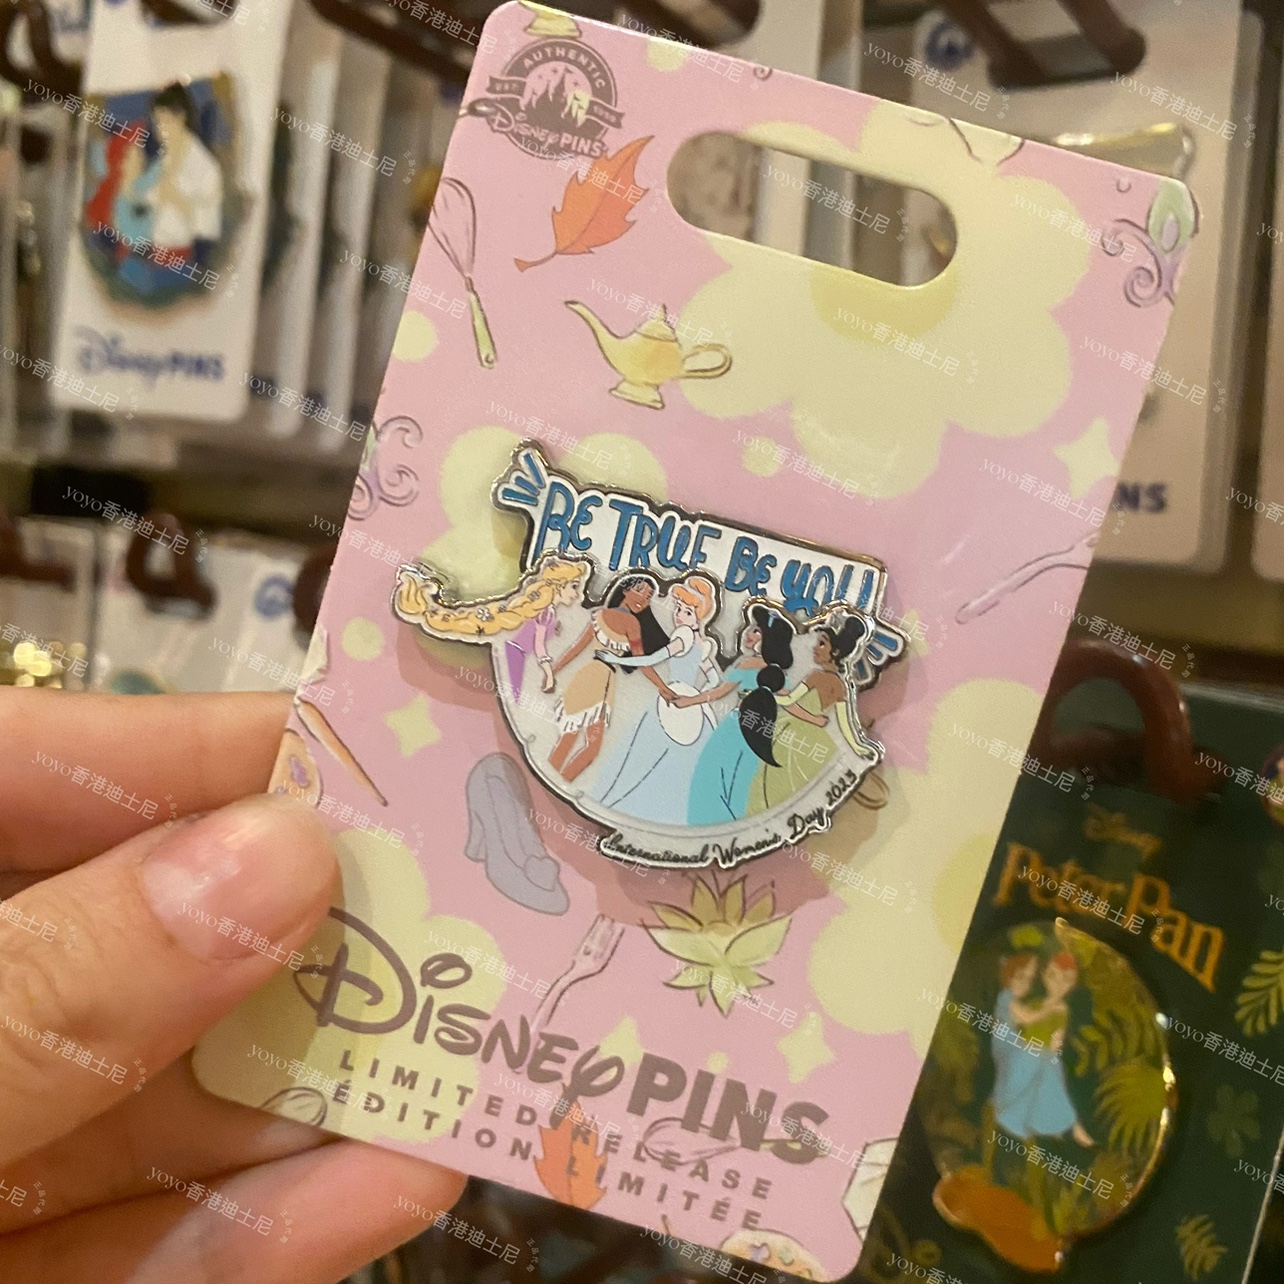 香港迪士尼 灰姑娘花木兰茉莉长发蒂娜公主 收藏交换pin徽章